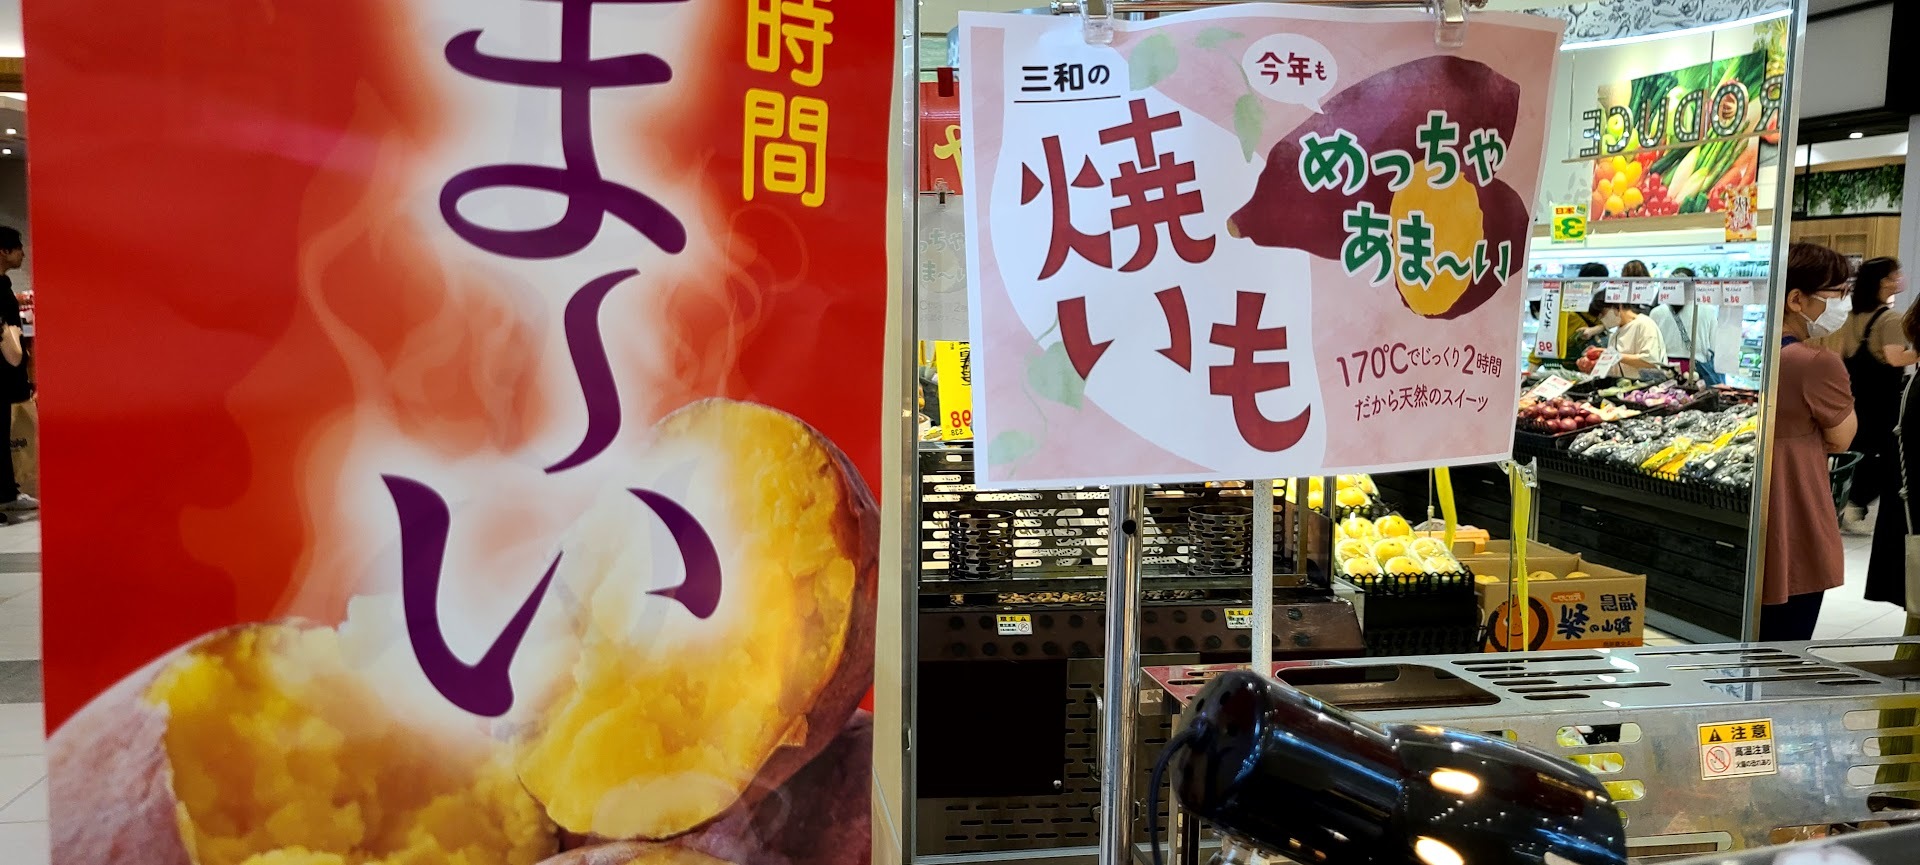 三和の焼き芋258円C